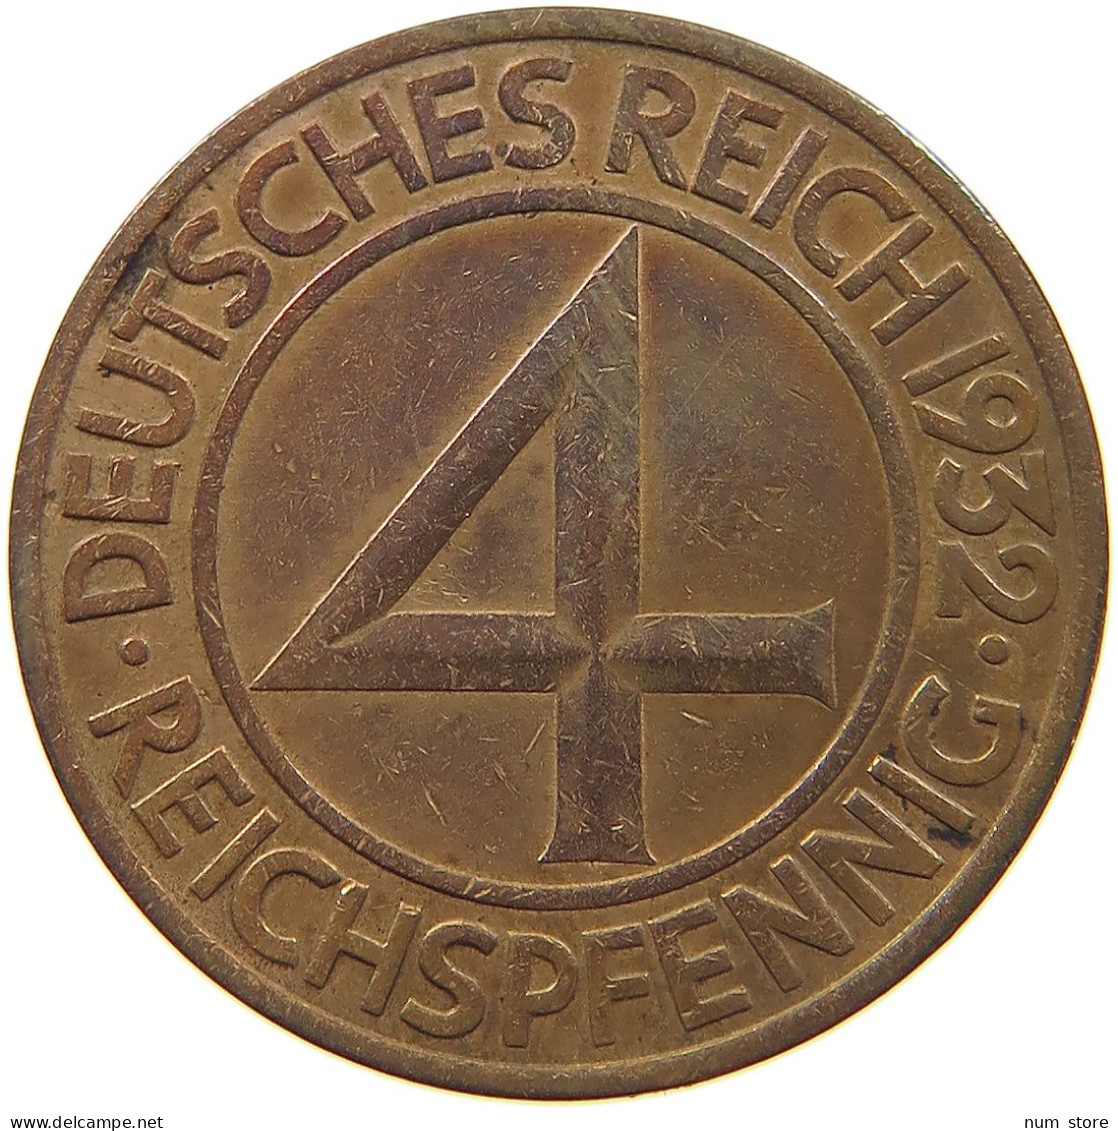 WEIMARER REPUBLIK 4 PFENNIG 1932 A  #c080 0491 - 4 Reichspfennig